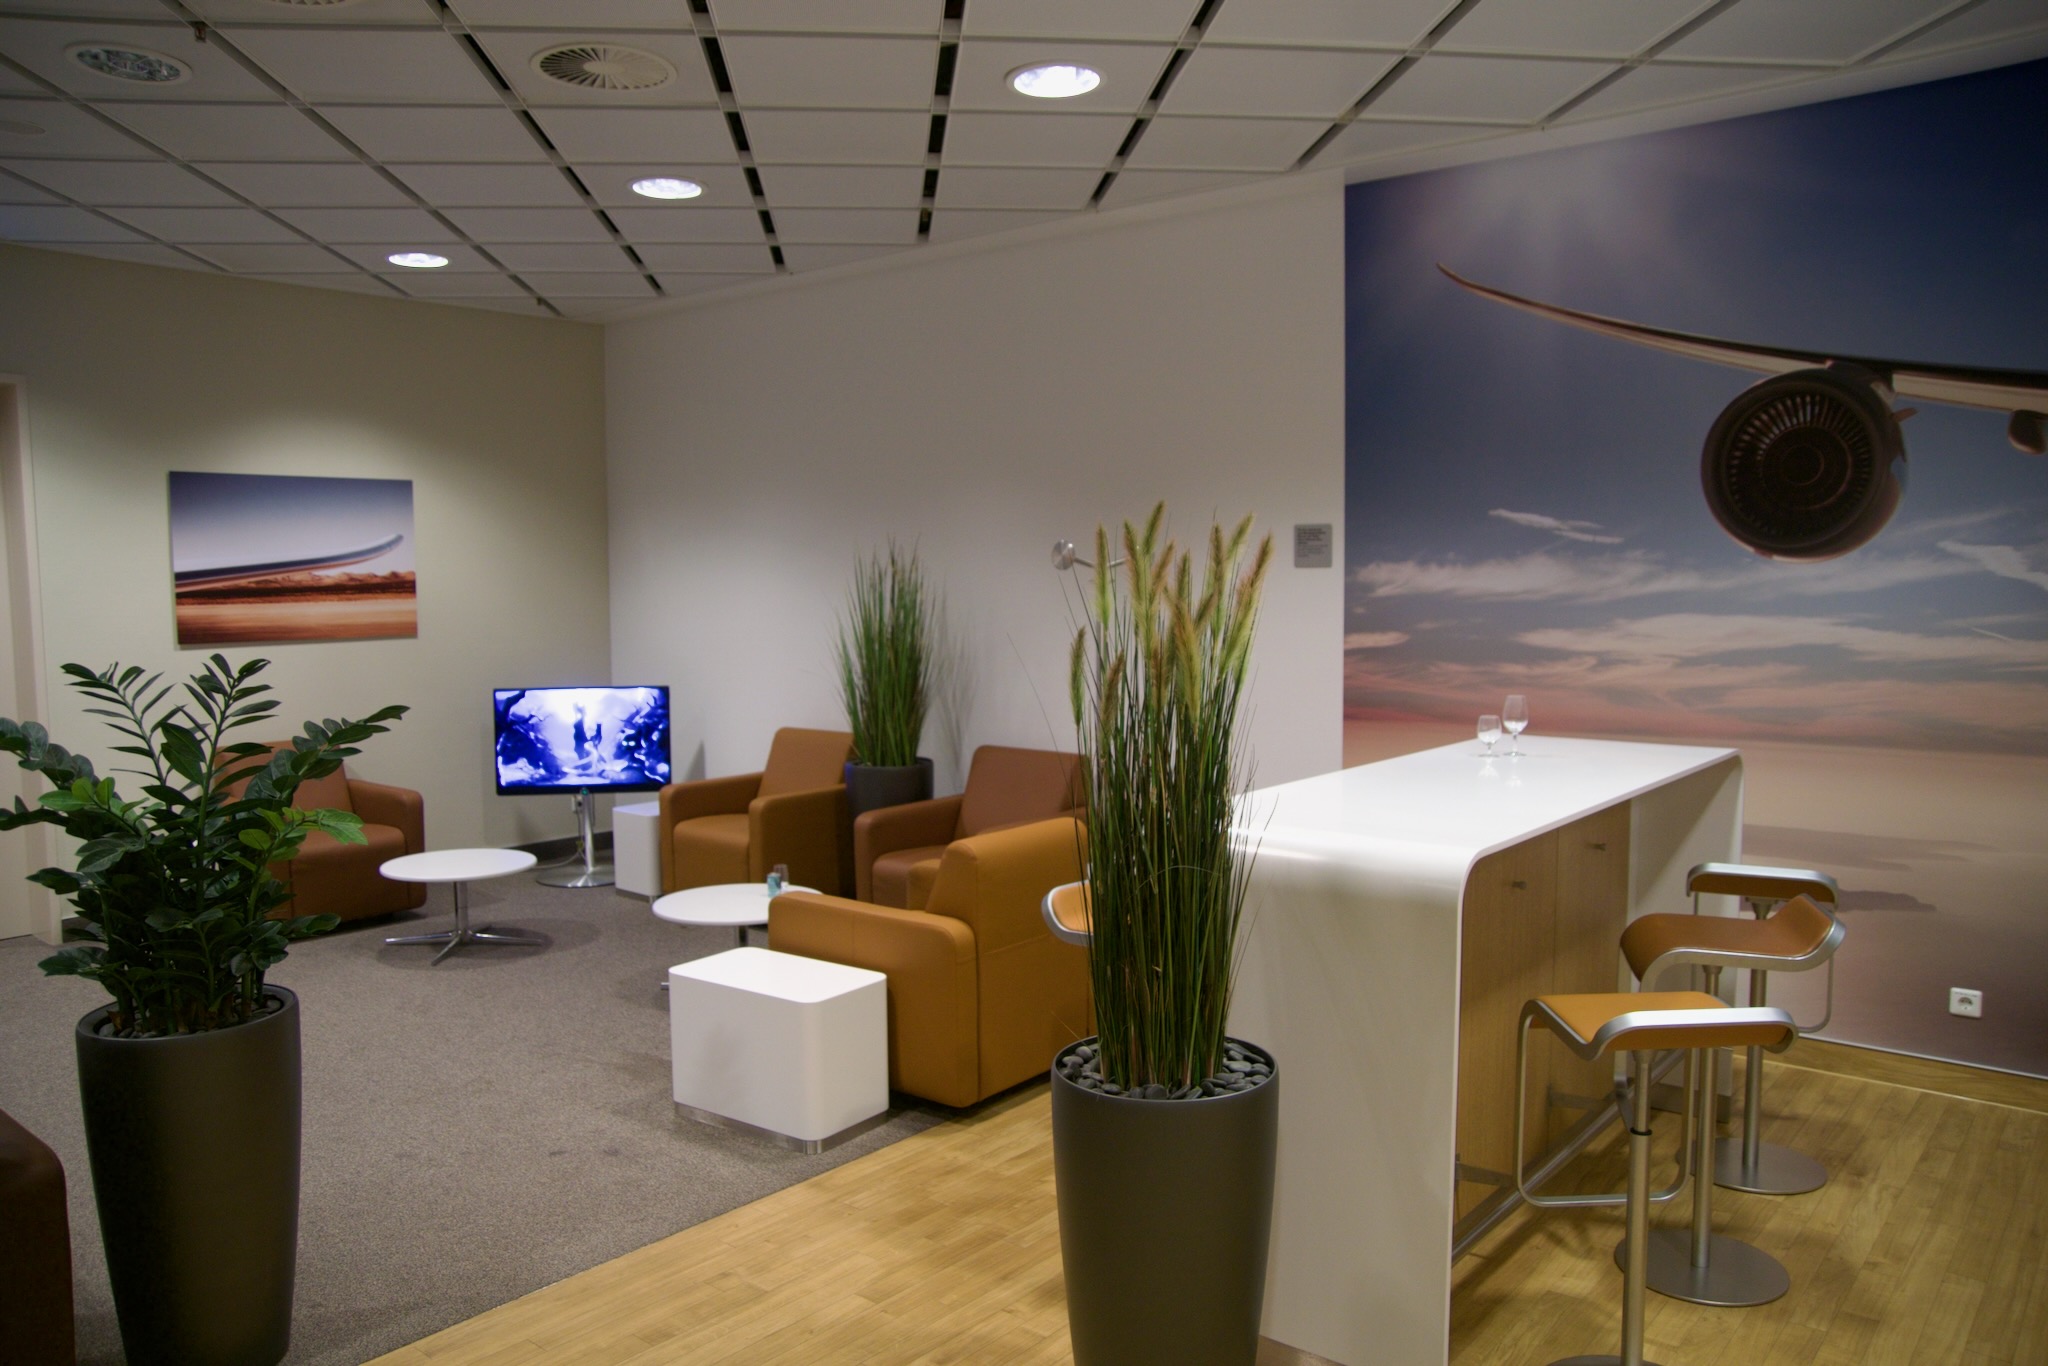 Sitzbereich in der Lufthansa Senator Lounge Leipzig/Halle